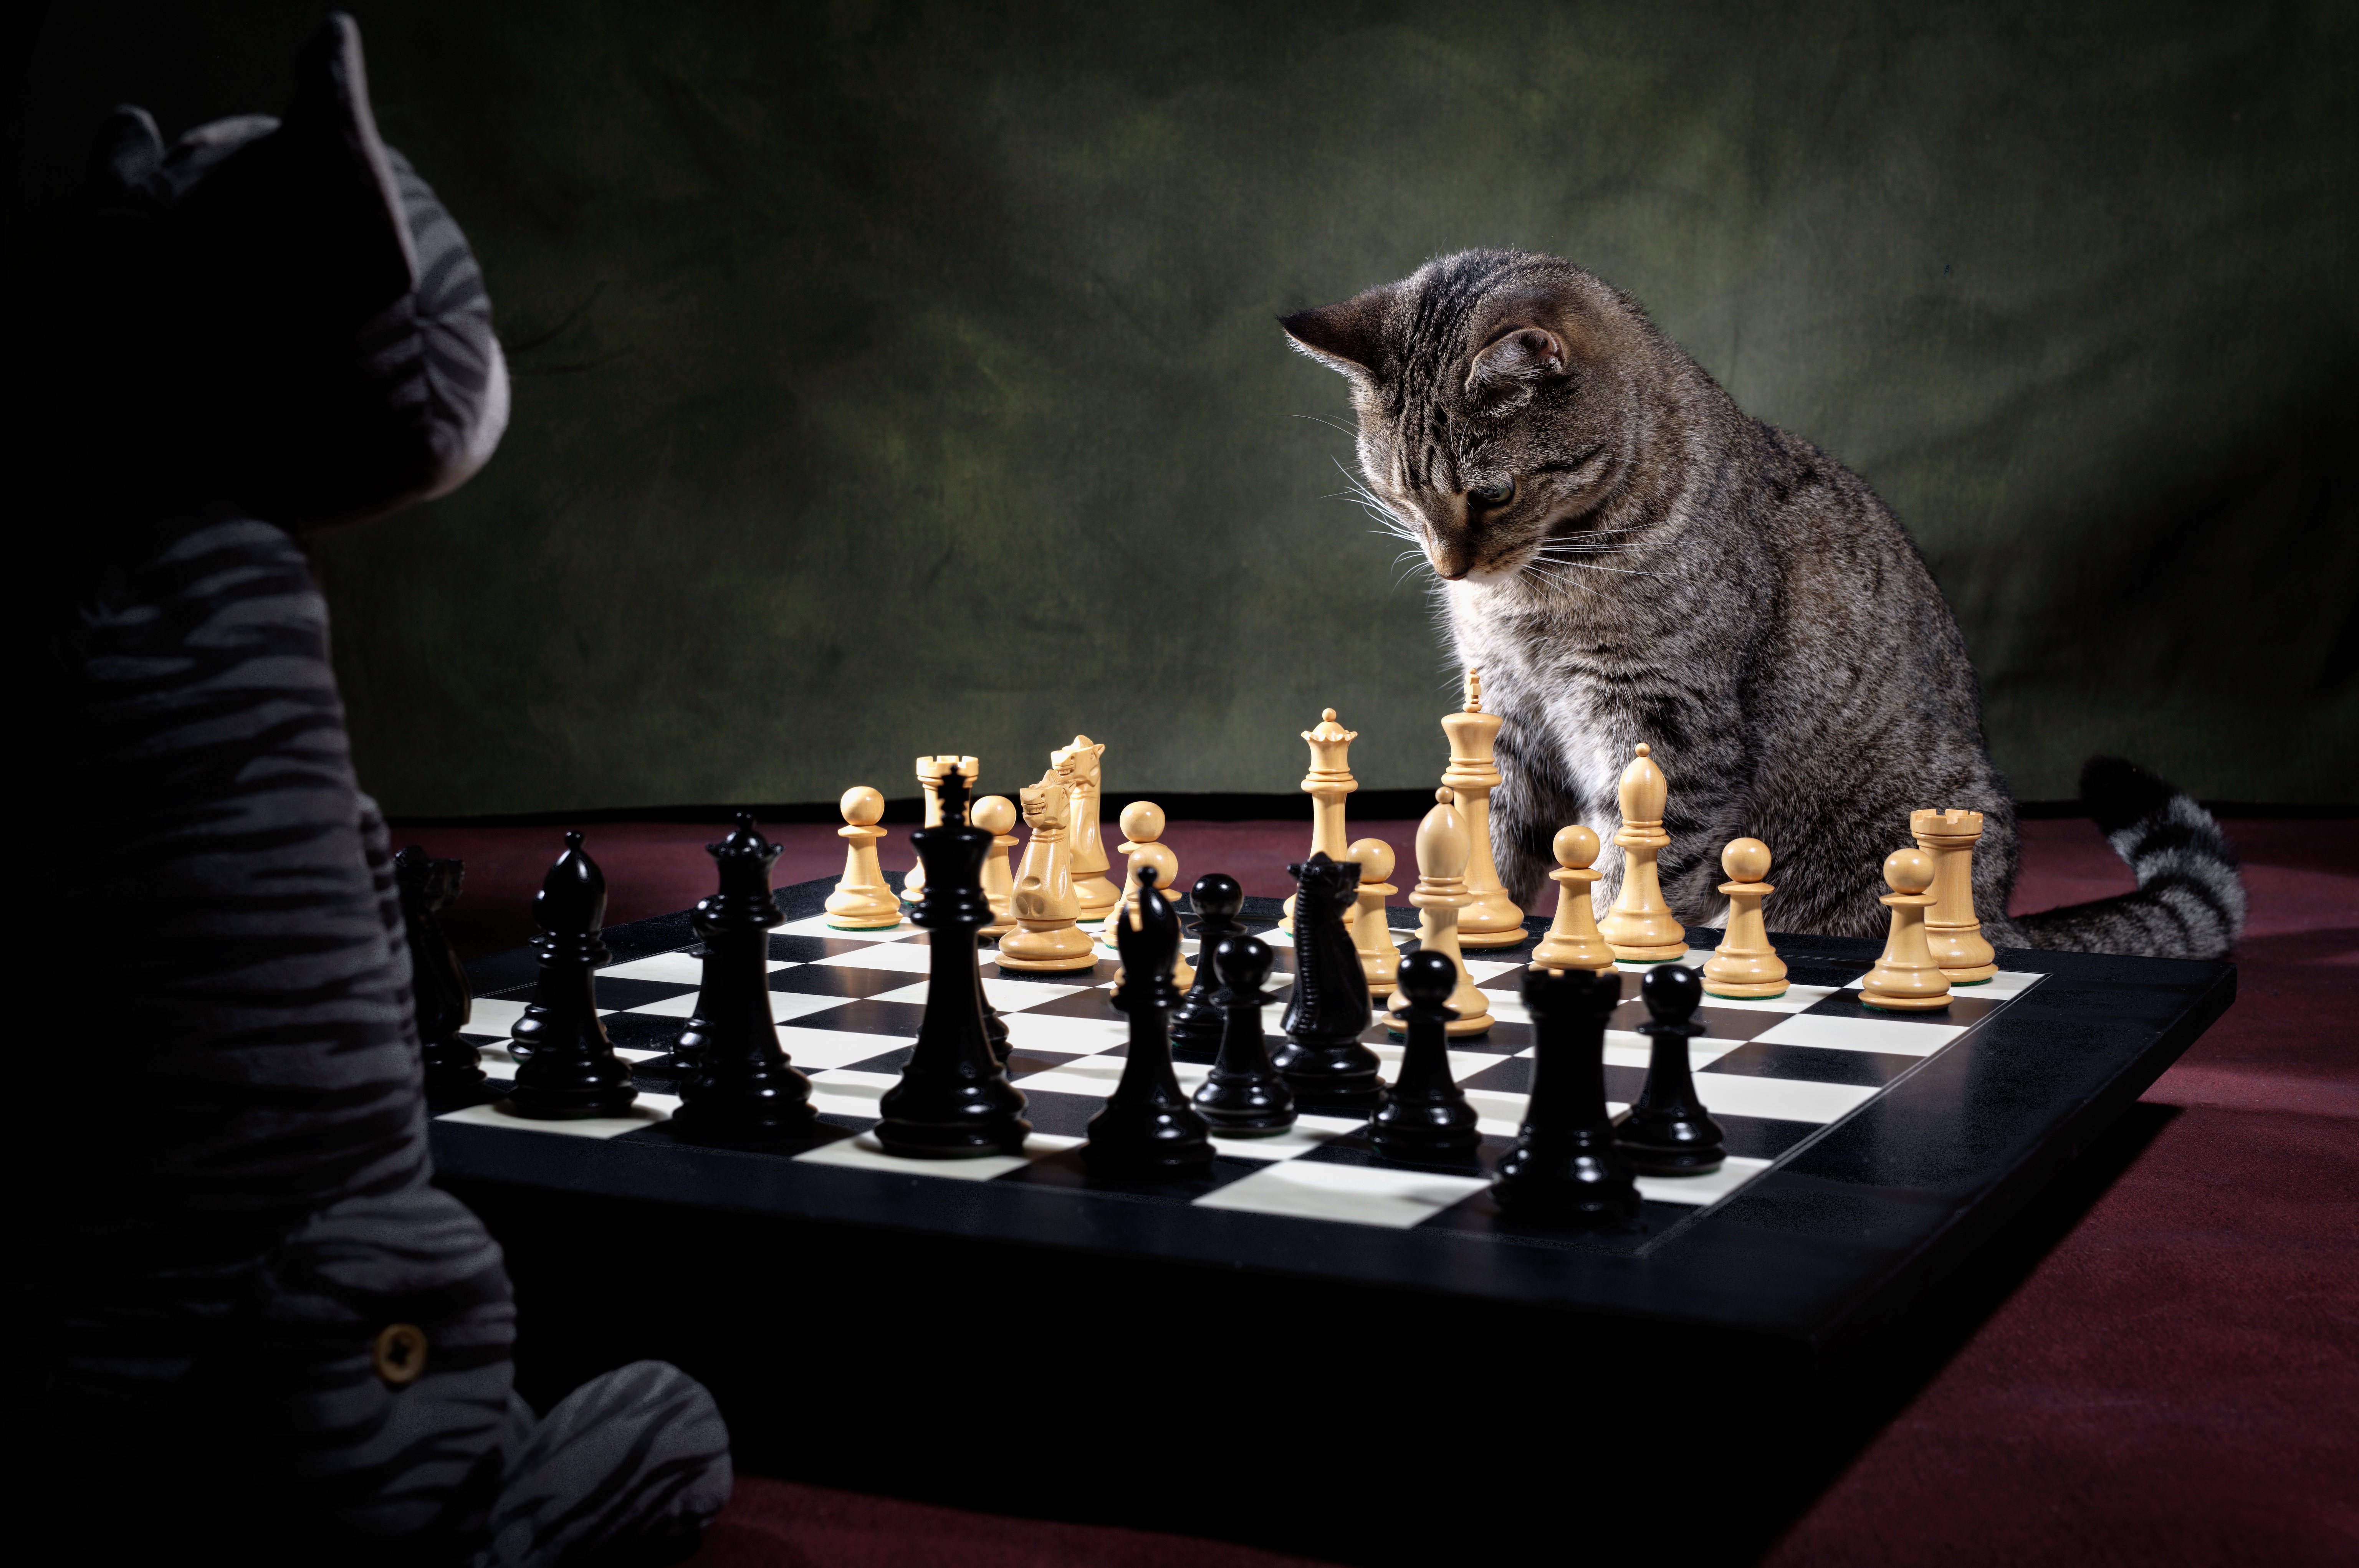 Скачать обои бесплатно Животные, Шахматы, Кошка, Кошки картинка на рабочий стол ПК